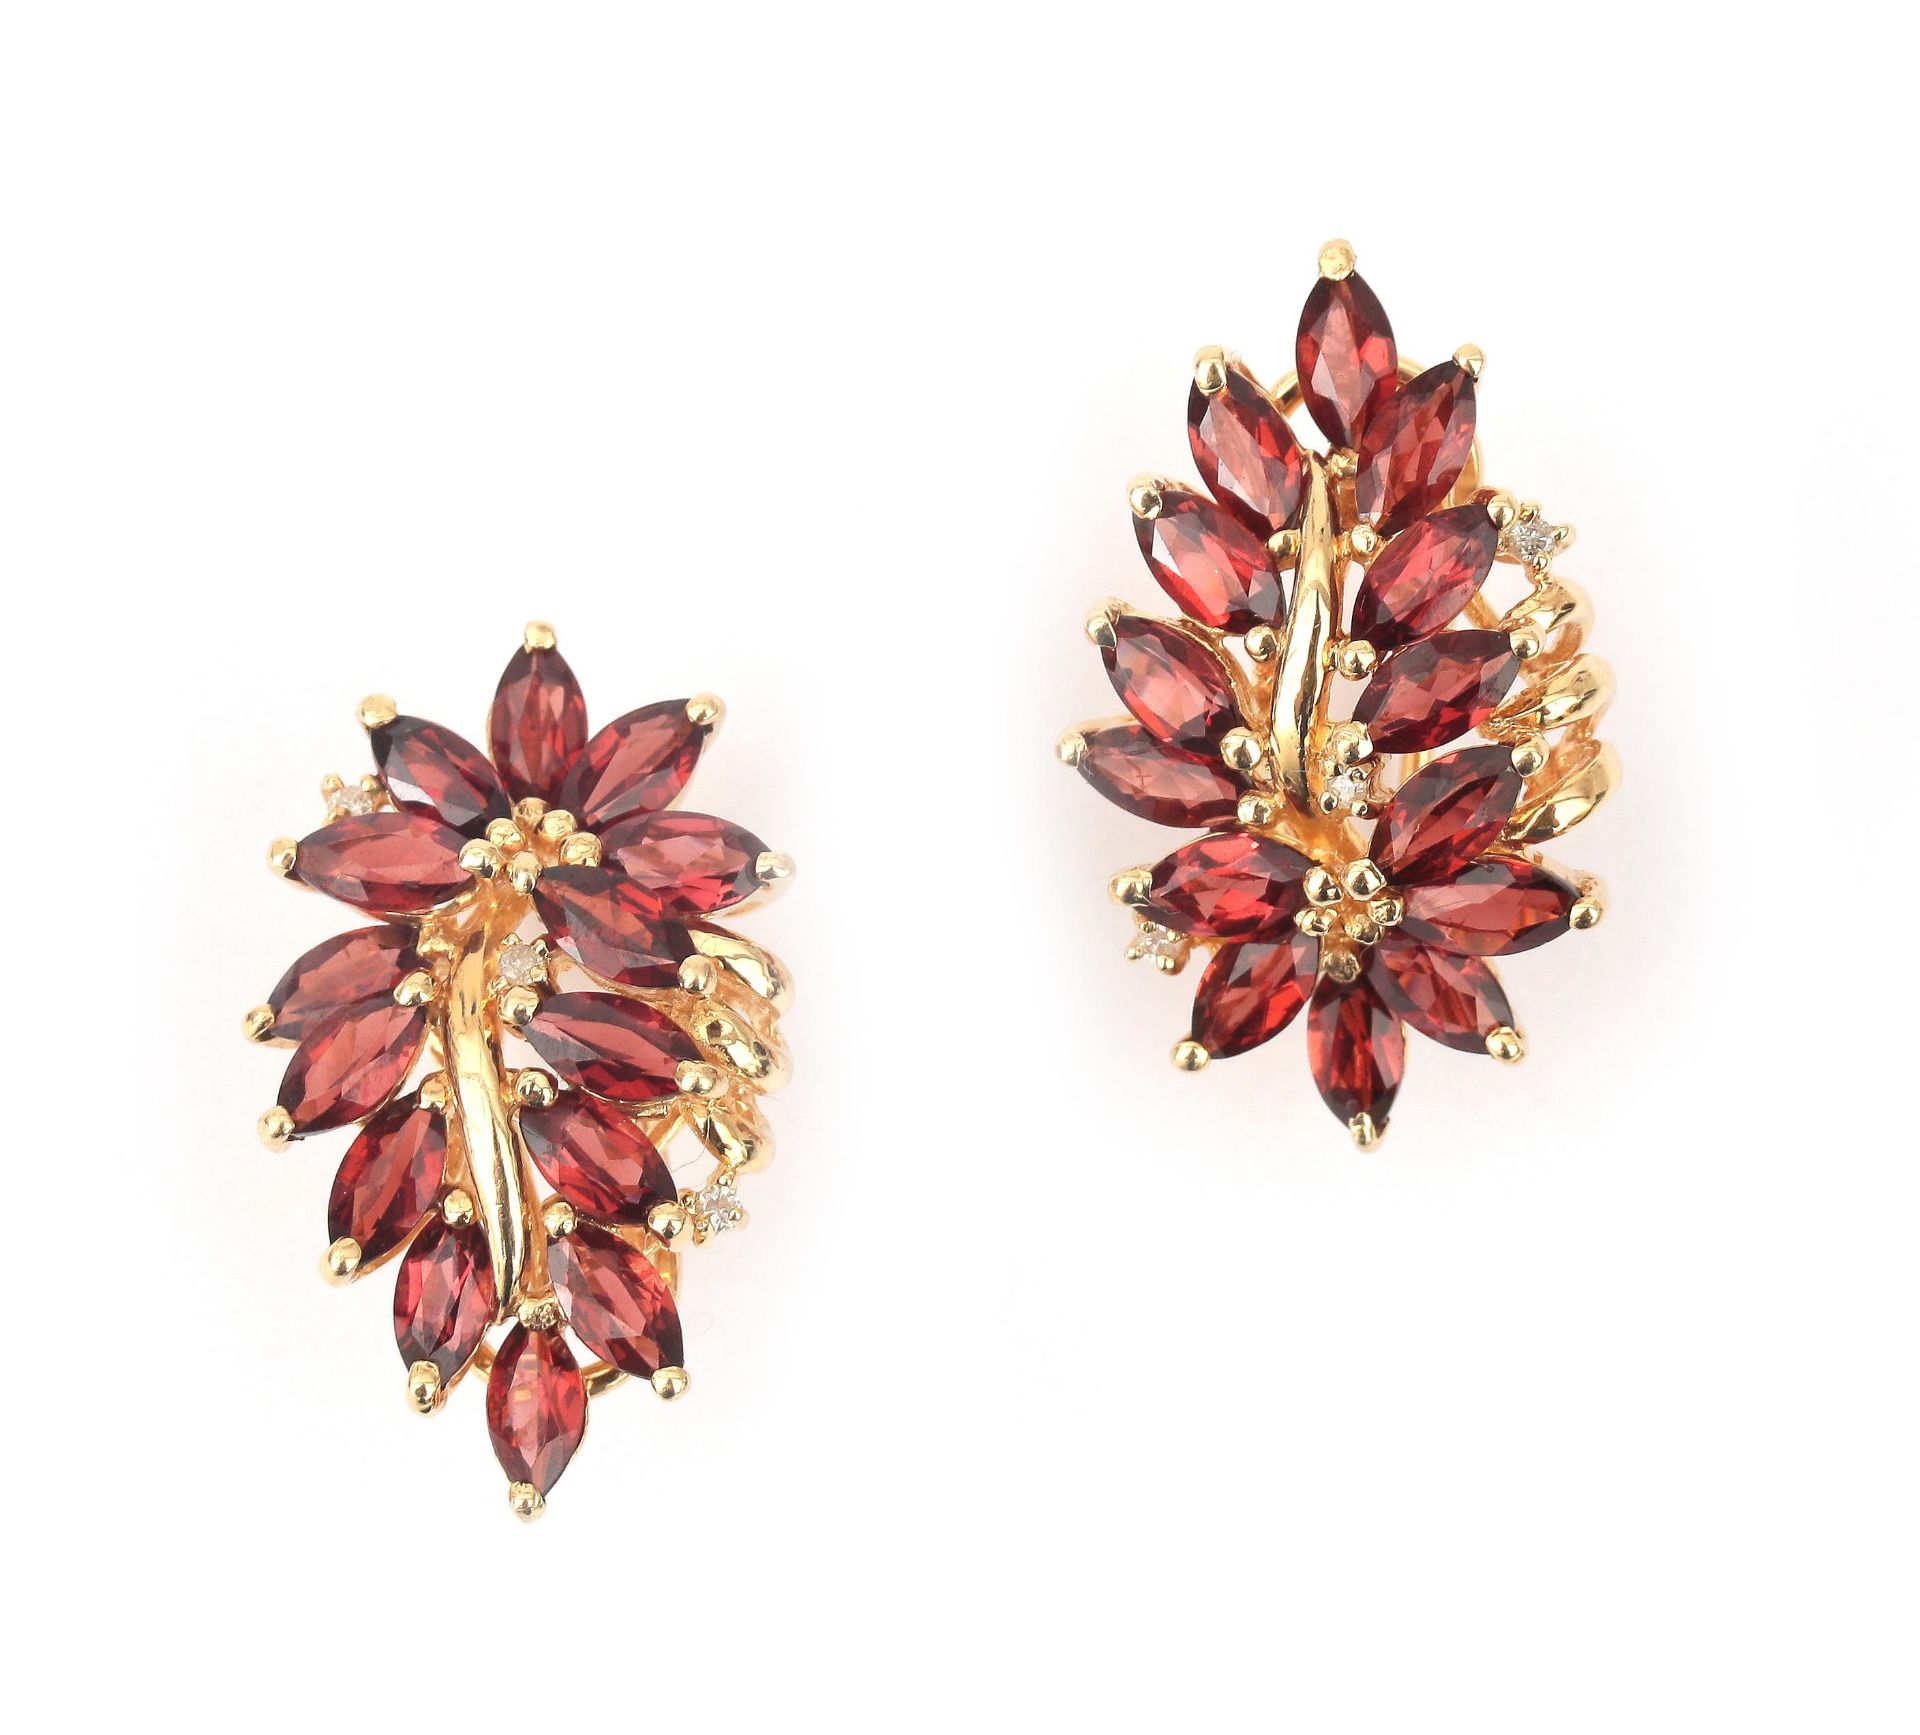 A pair of 14 karat gold garnet earrings